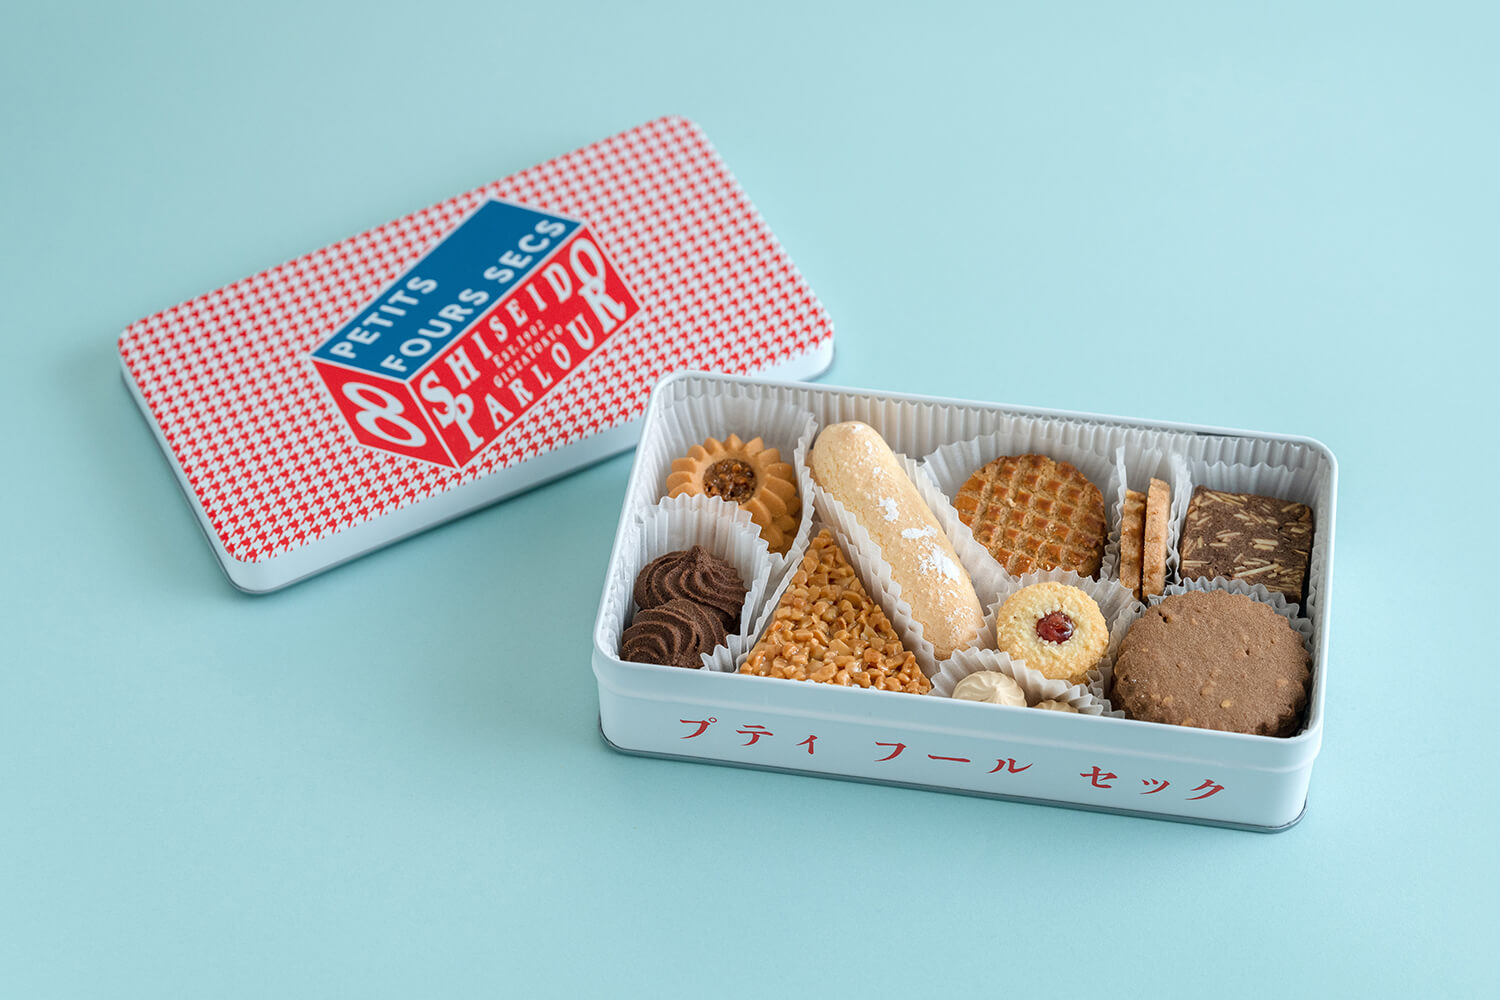 東京土産におすすめのクッキー缶5選 みちくさガイド